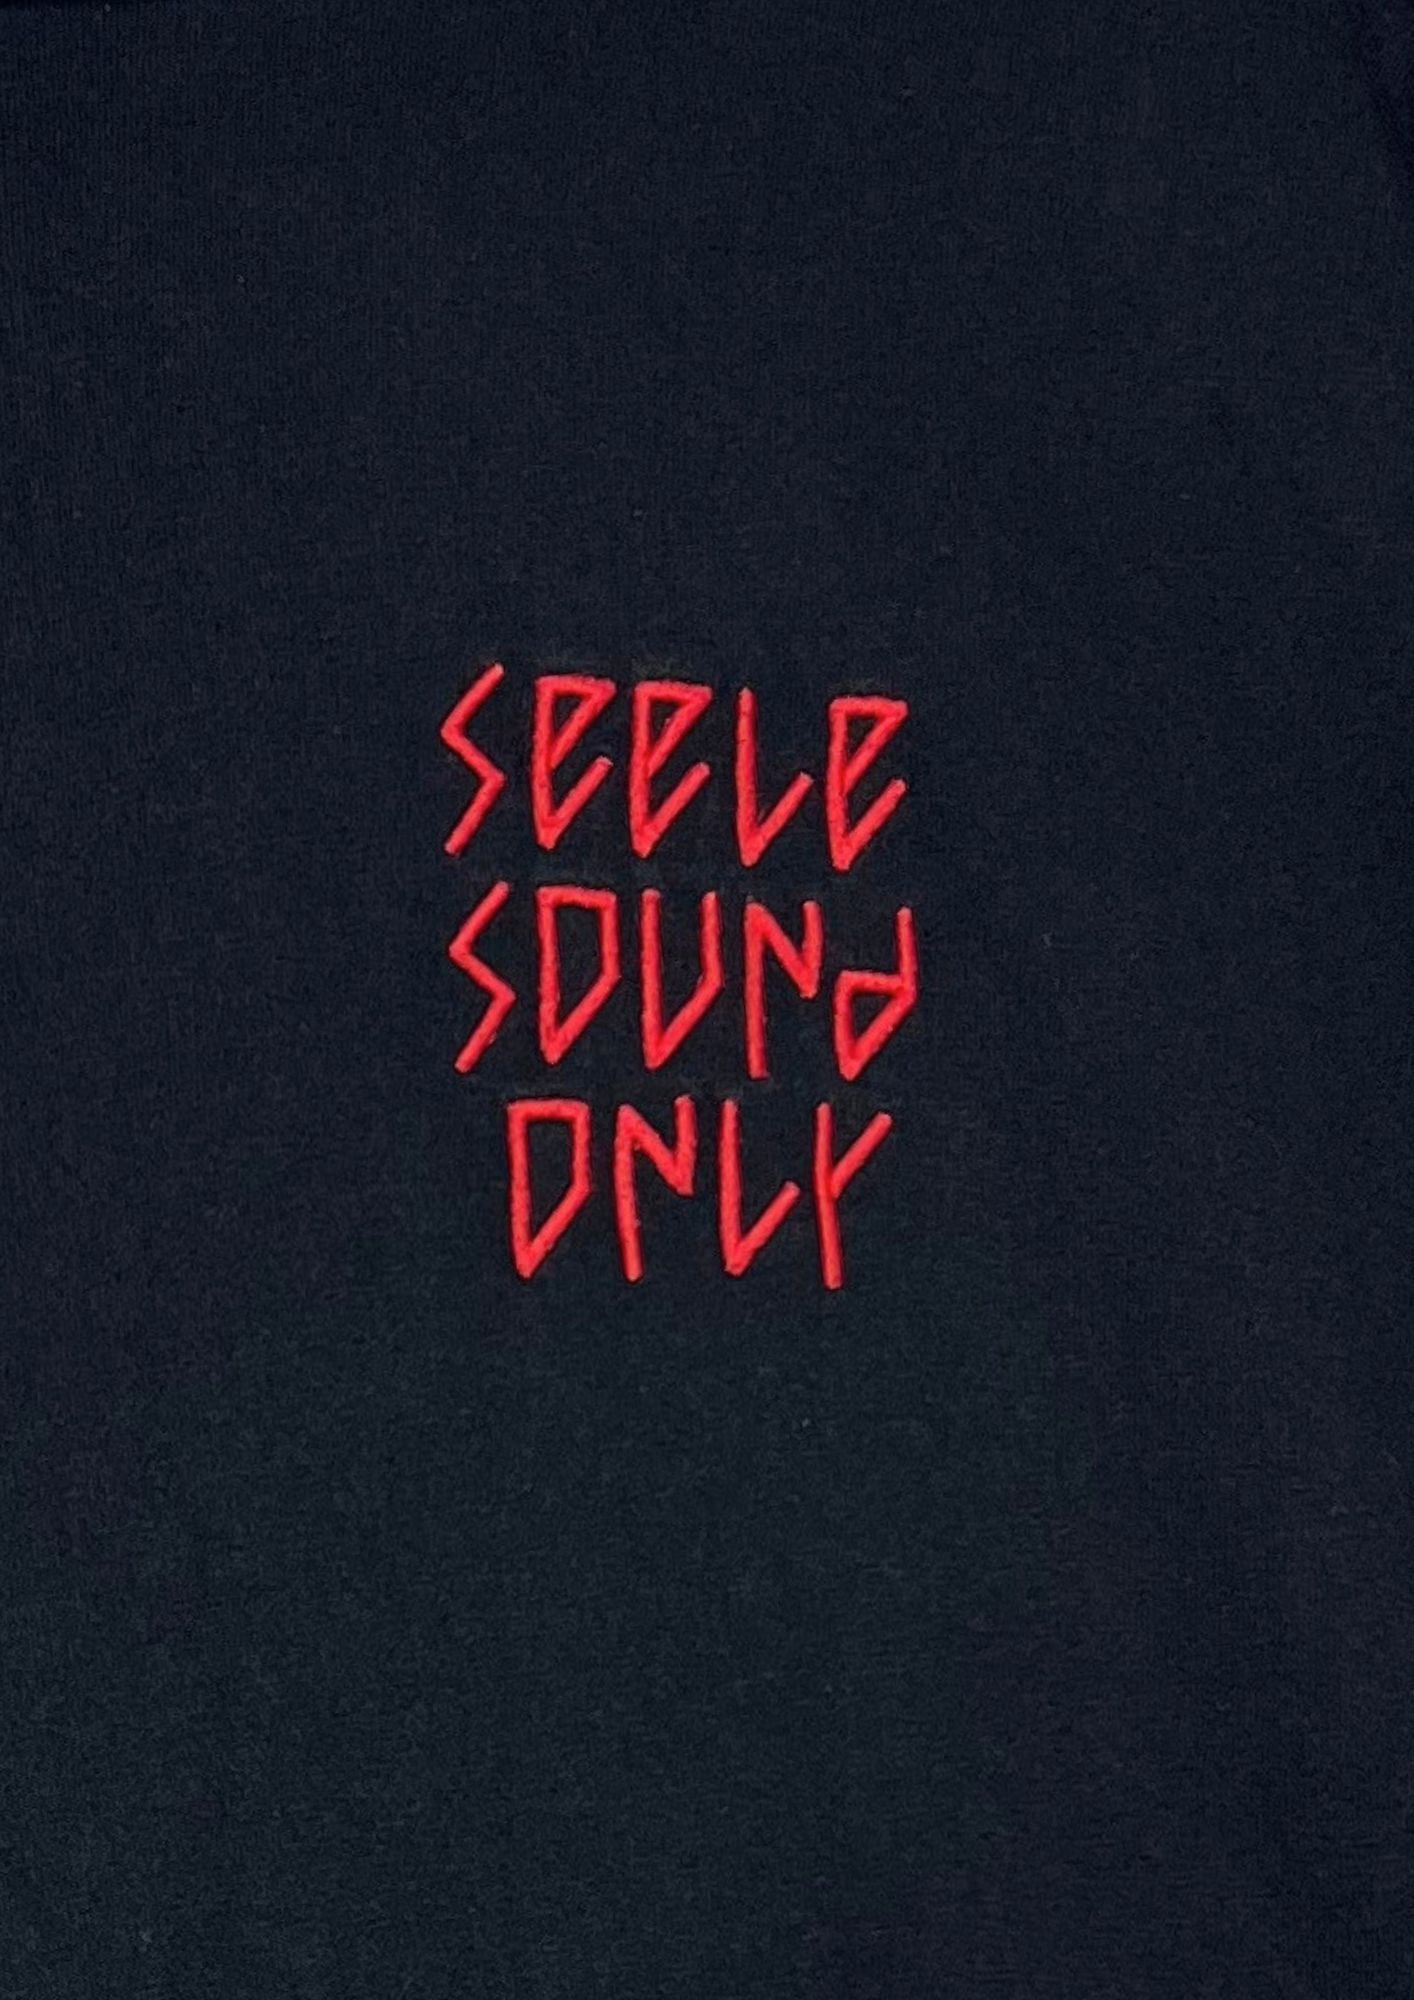 2018 Neon Genesis Evangelion  x GU Seele Logo Hoodie T-shirt